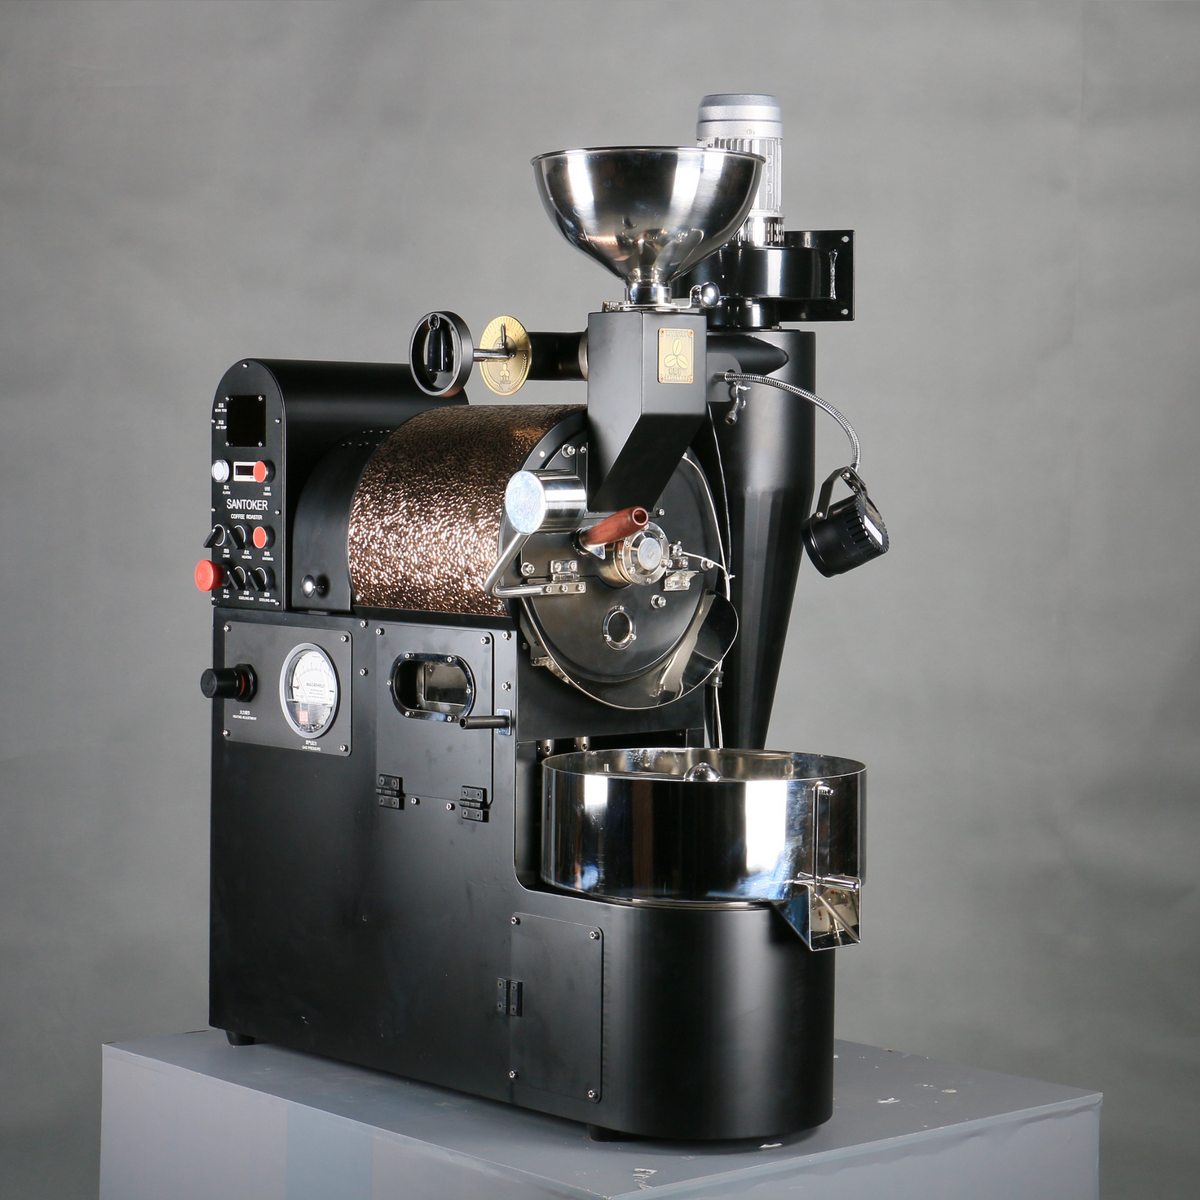 Santoker R3 Manual Coffee Roaster - 3kg/Batch